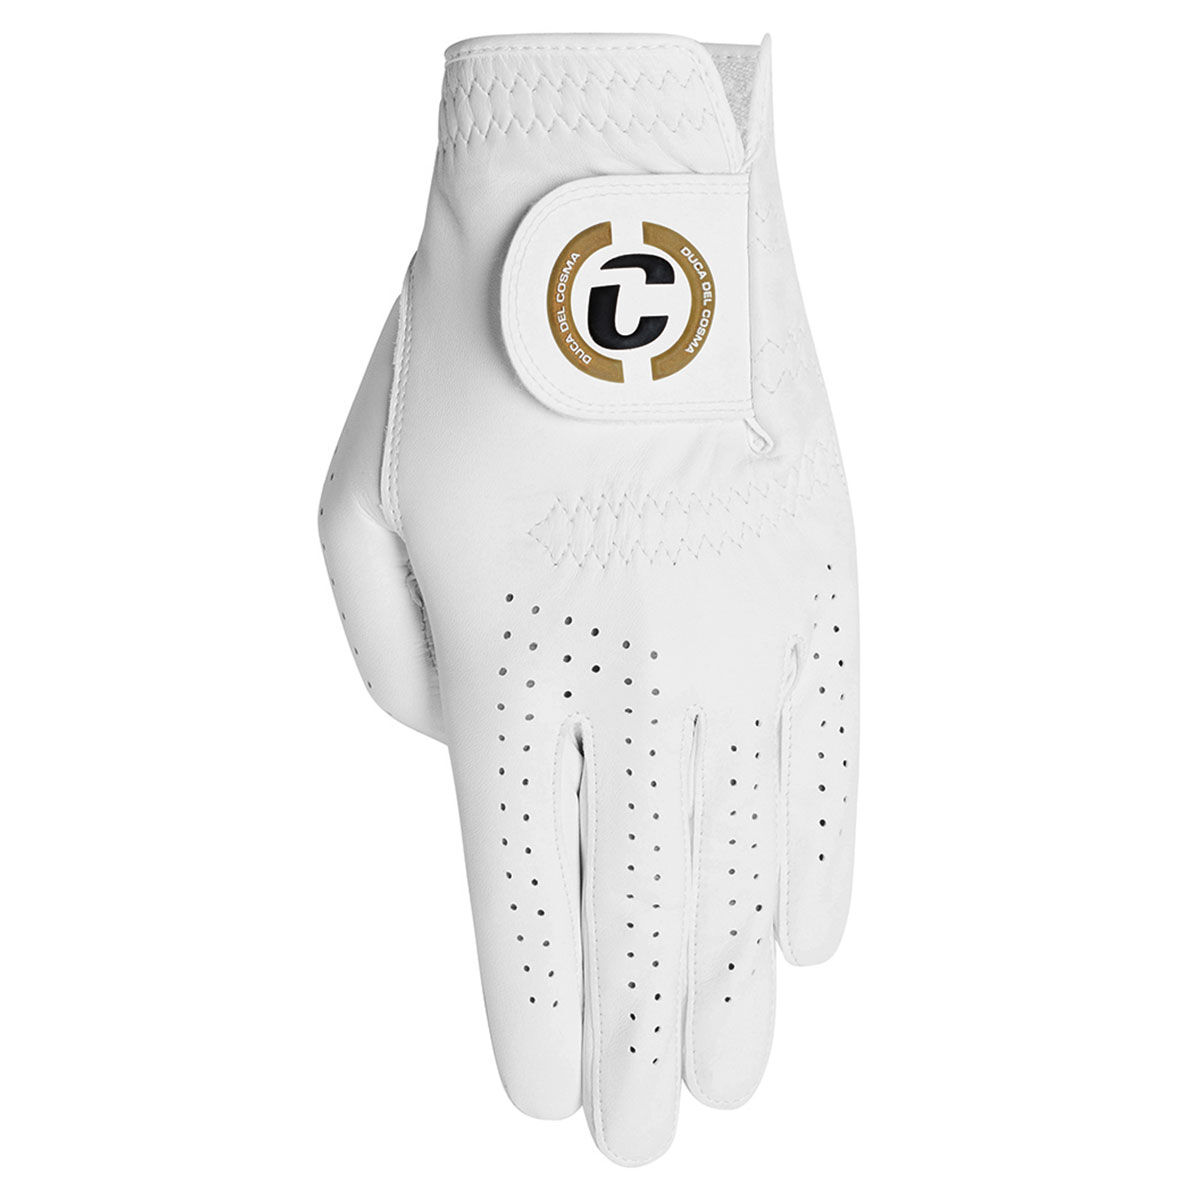 Duca Del Cosma White Elite Pro Fontana Cabretta Left Hand Golf Glove, Size: Large | American Golf